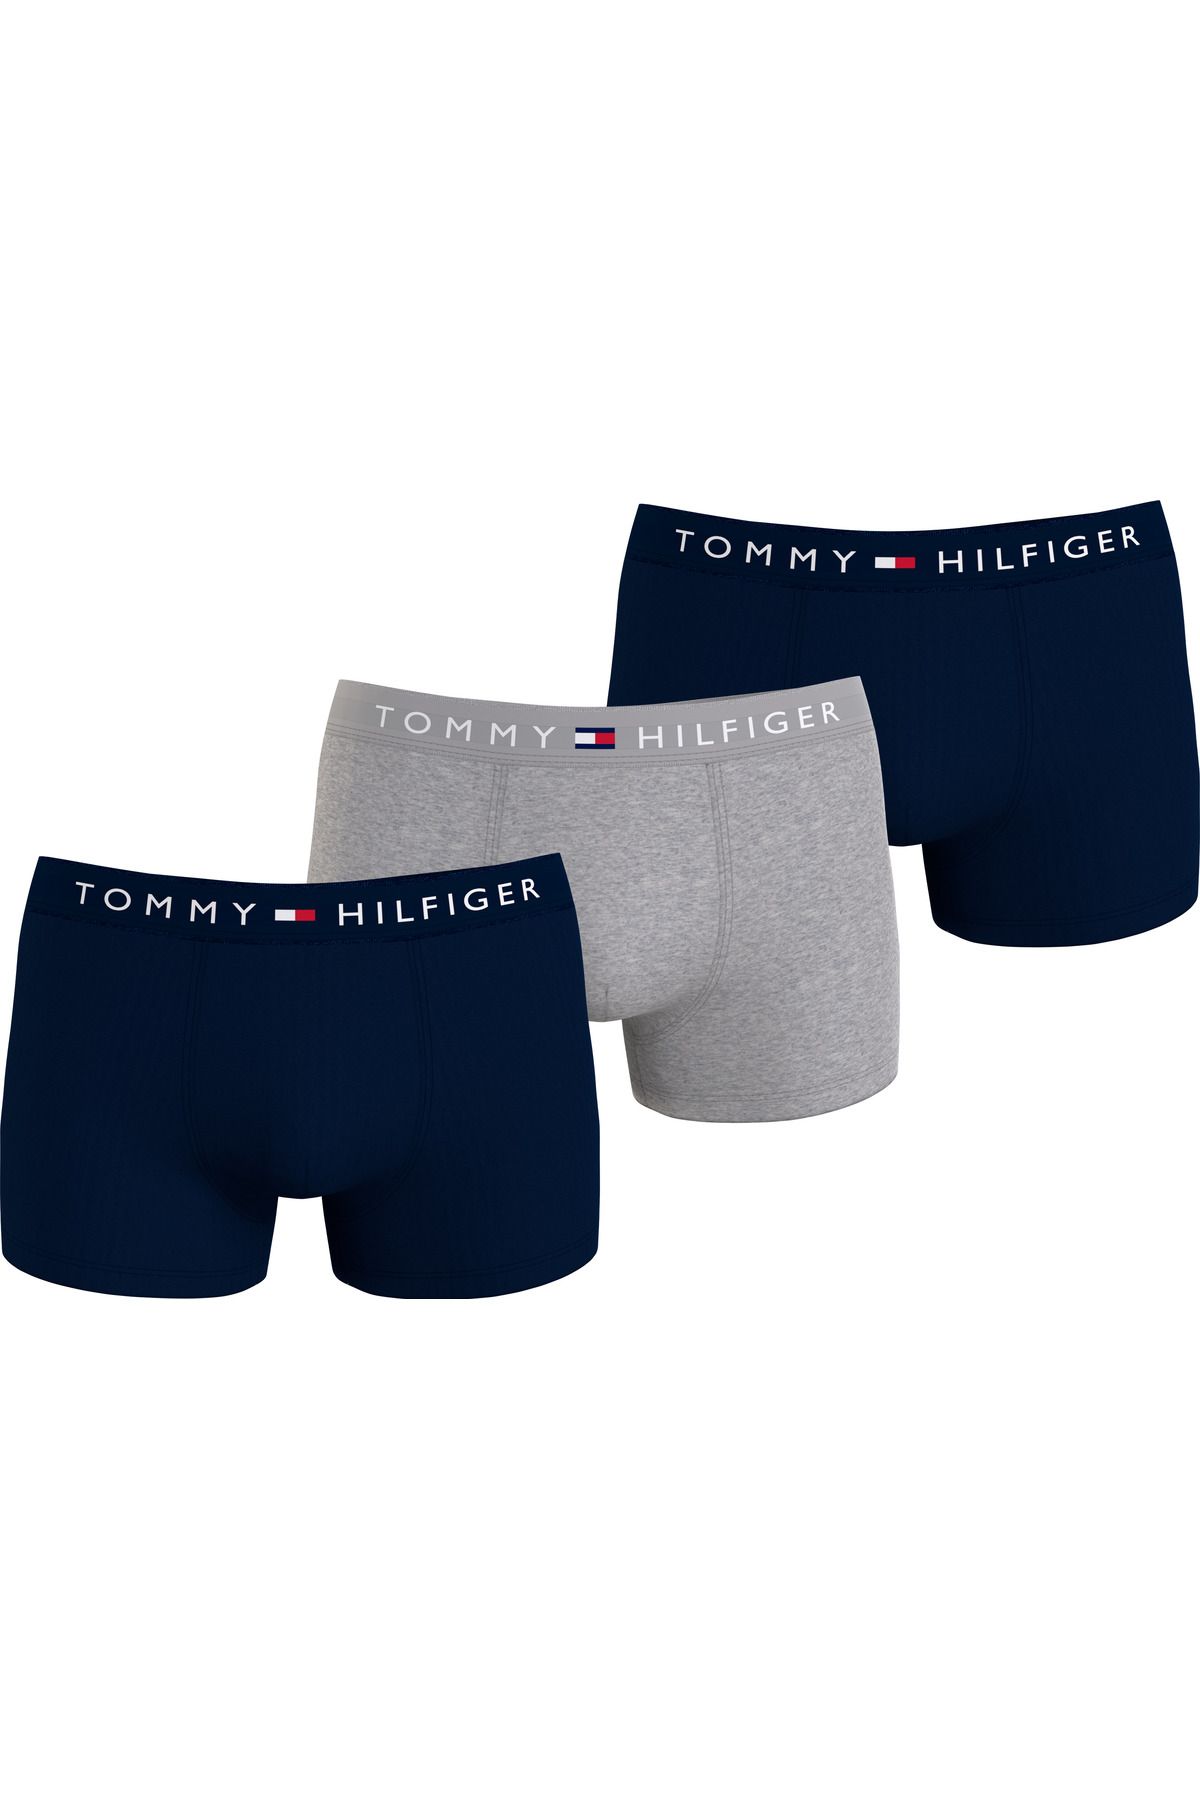 Tommy Hilfiger Erkek Marka Logolu Elastik Bantlı Pamuklu Günlük Kullanıma Uygun Lacivert-gri-lacivert Boxer Um0um03